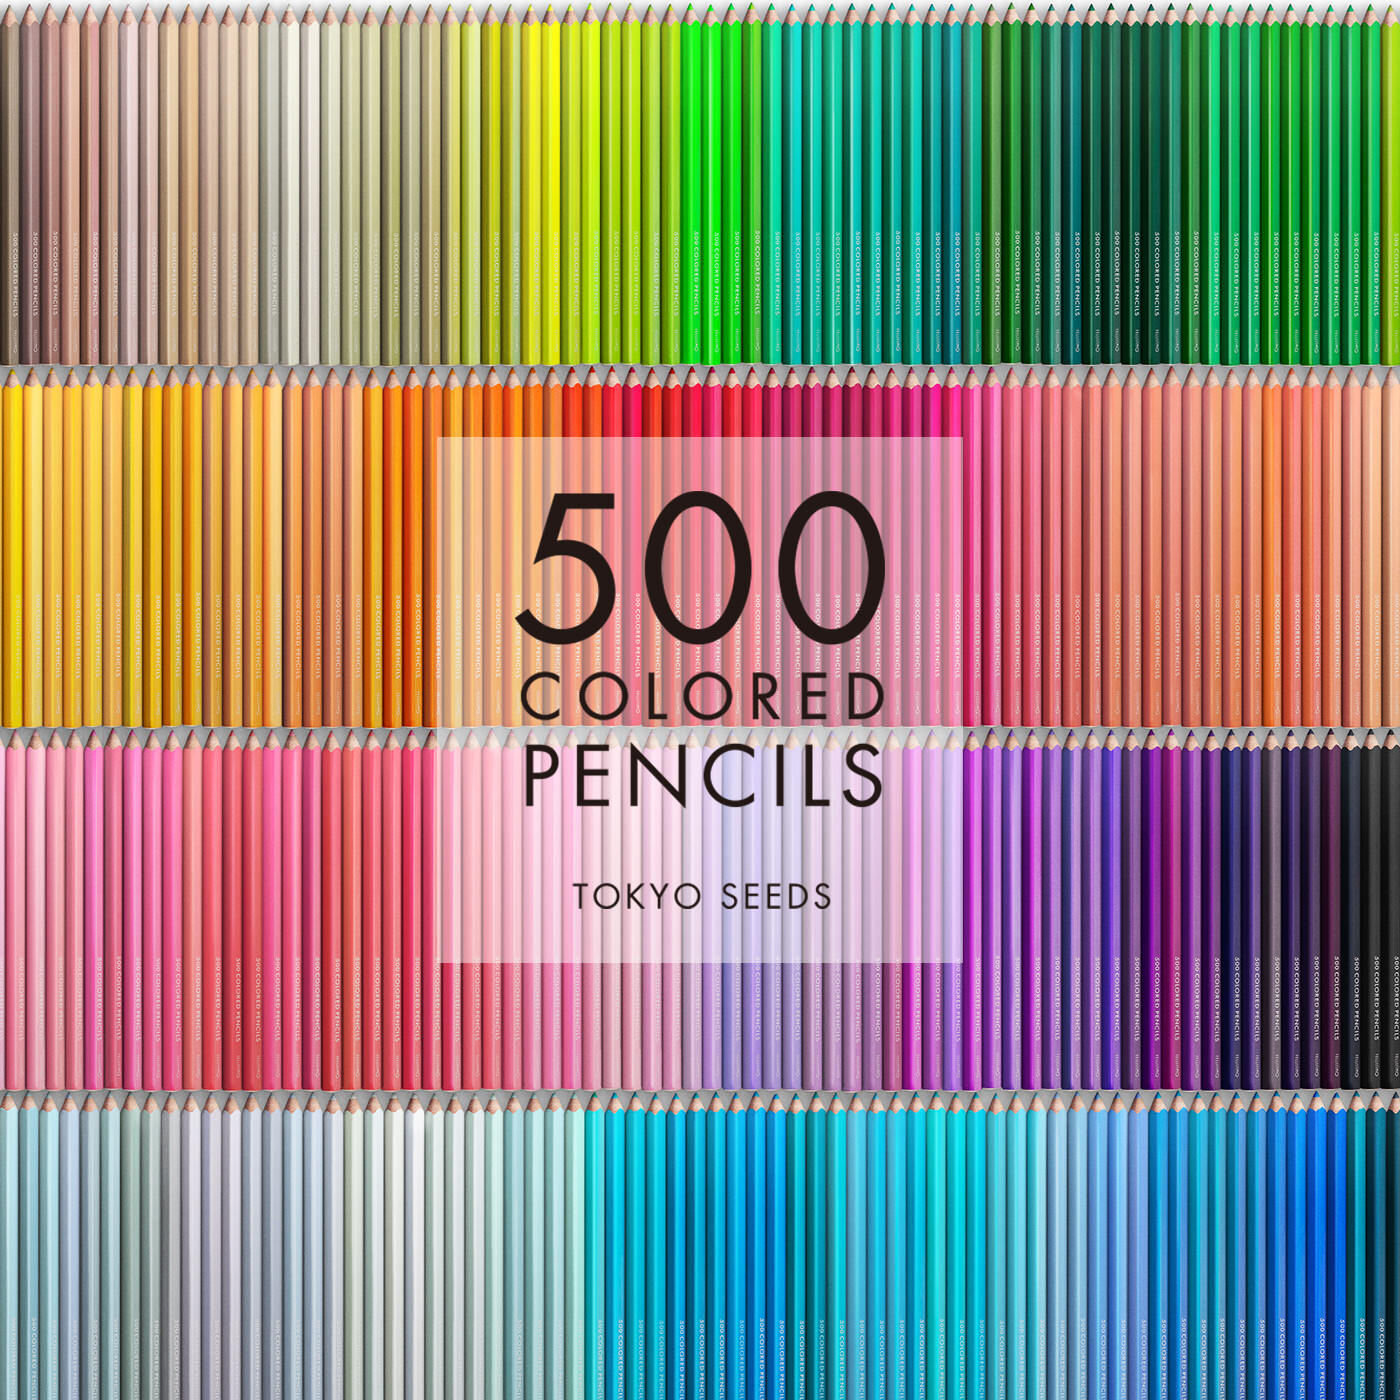 Real Stock|【338/500 PLUM PERFECTION】500色の色えんぴつ TOKYO SEEDS|1992年、世界初の「500色」という膨大な色数の色えんぴつが誕生して以来、その販売数は発売当初から合わせると、世界55ヵ国10万セット以上。今回、メイド・イン・ジャパンにこだわり、すべてが新しく生まれ変わって登場しました。